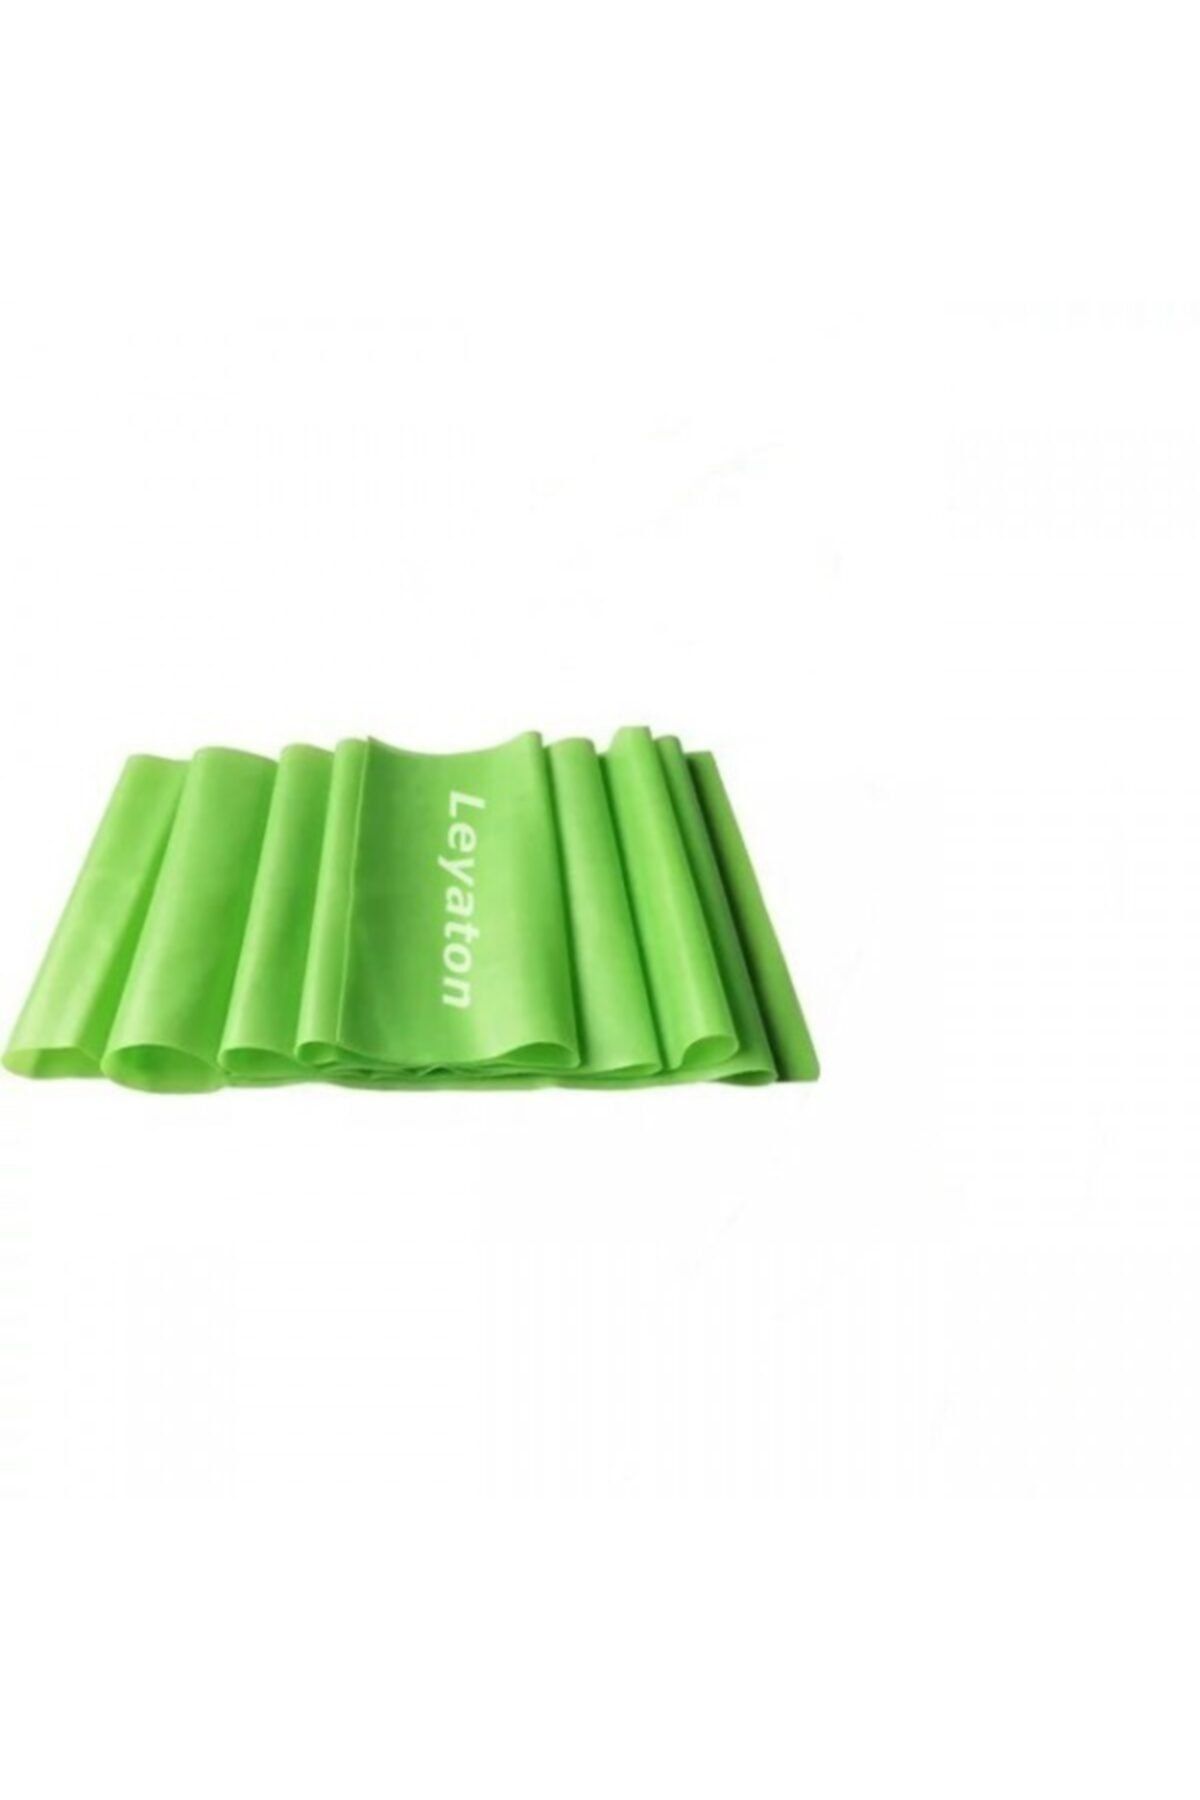 Leyaton Pilates Bandı Jimnastik Plates Lastiği 150X15 cm (Orta) Yeşil